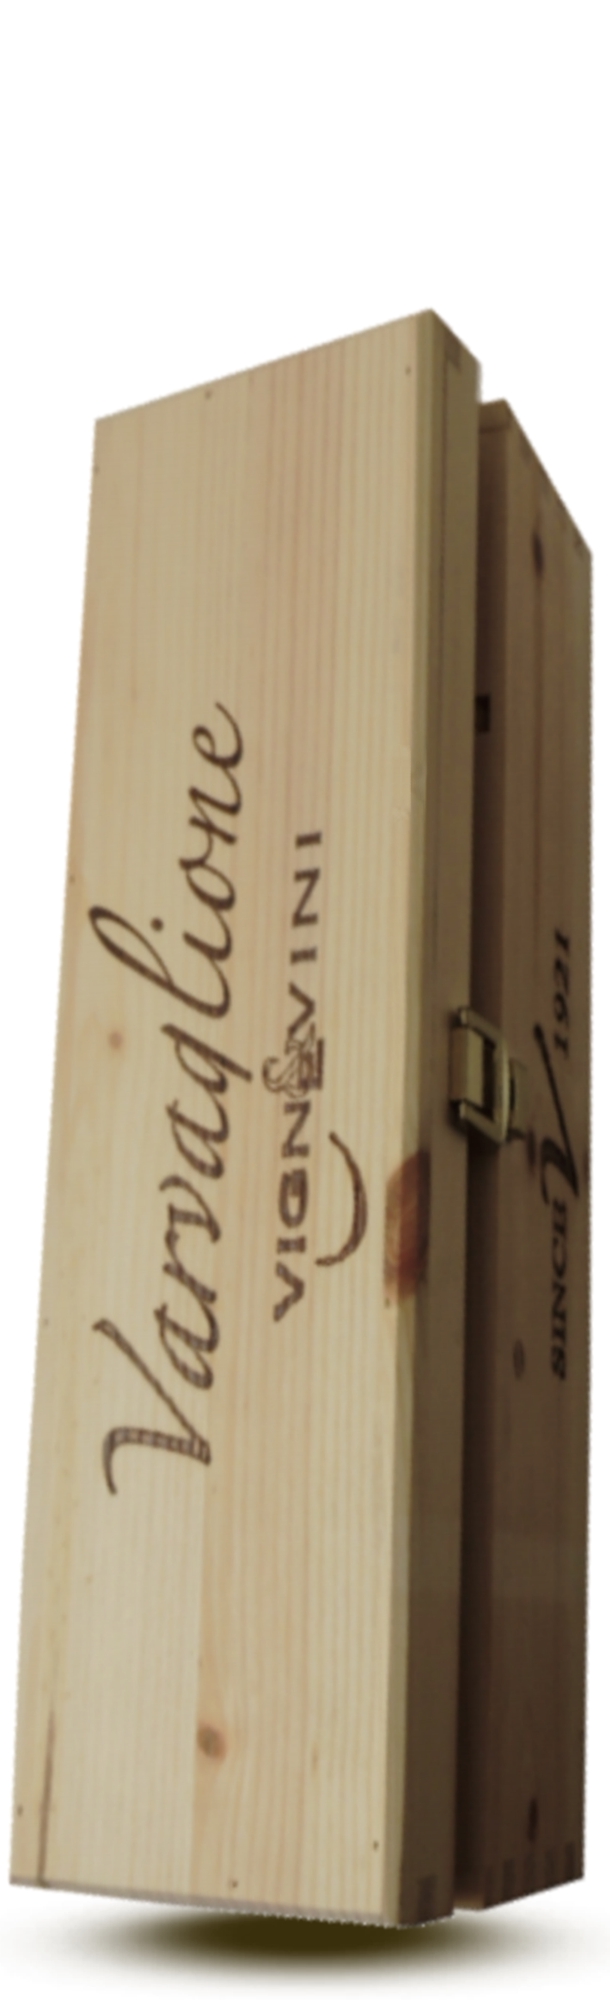 1_Skrzynka drewniana pojedyncza do win Varvaglione